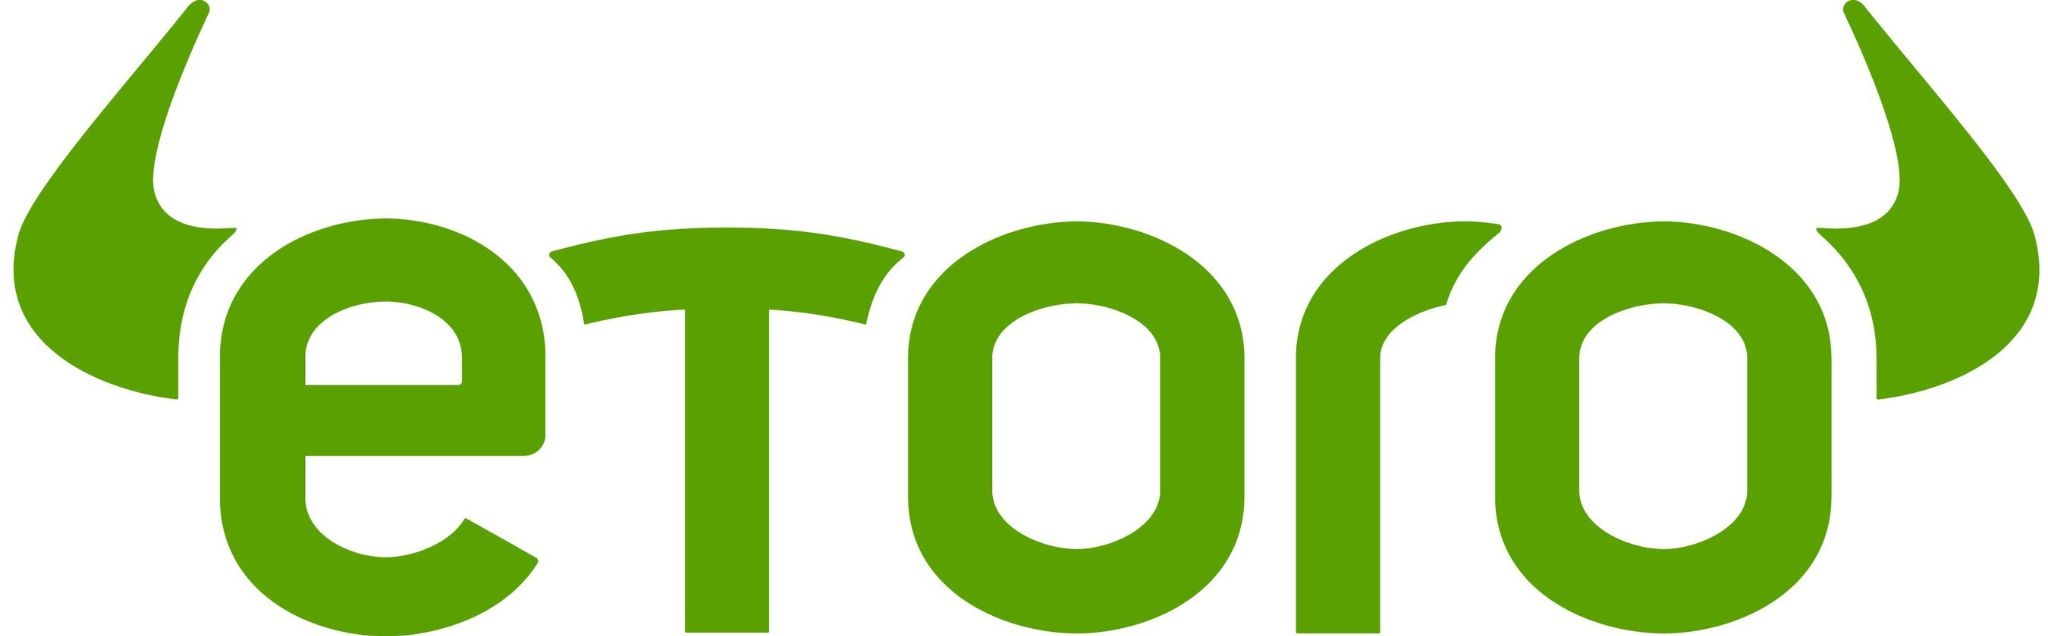 etoro- logo